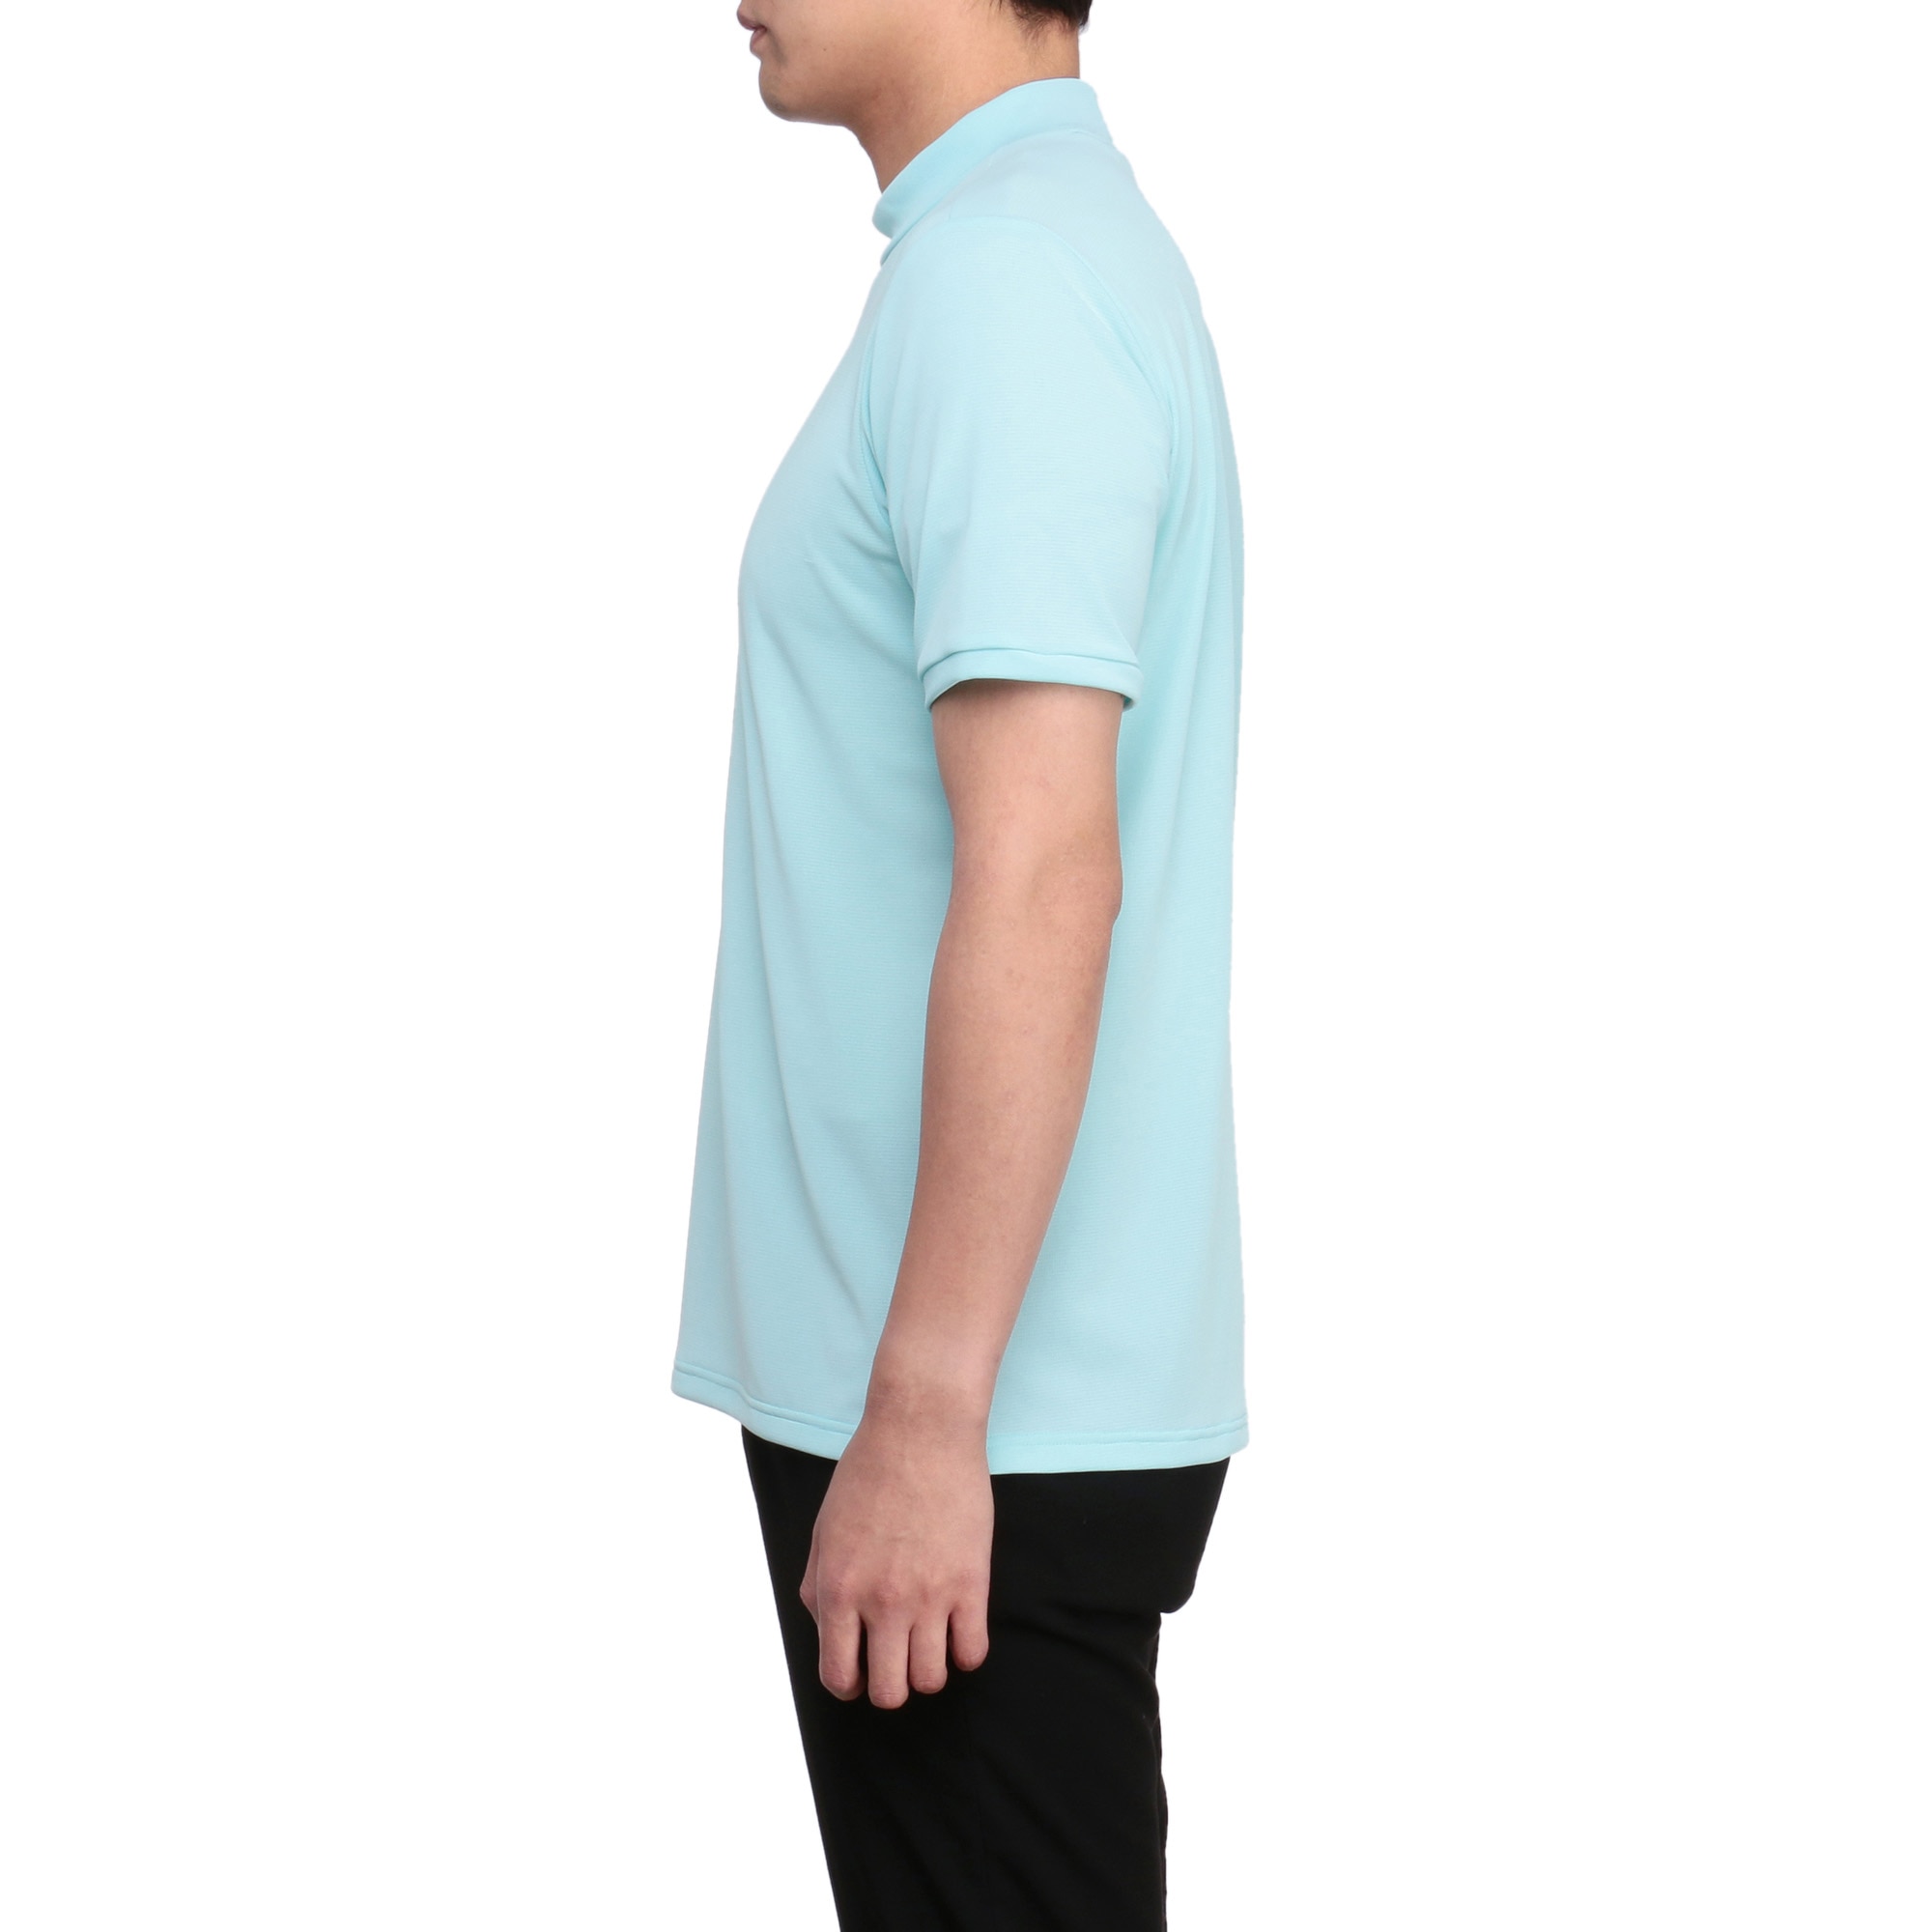 ストレッチ半袖モックネックシャツ[メンズ]|E2MAA014|半袖シャツ